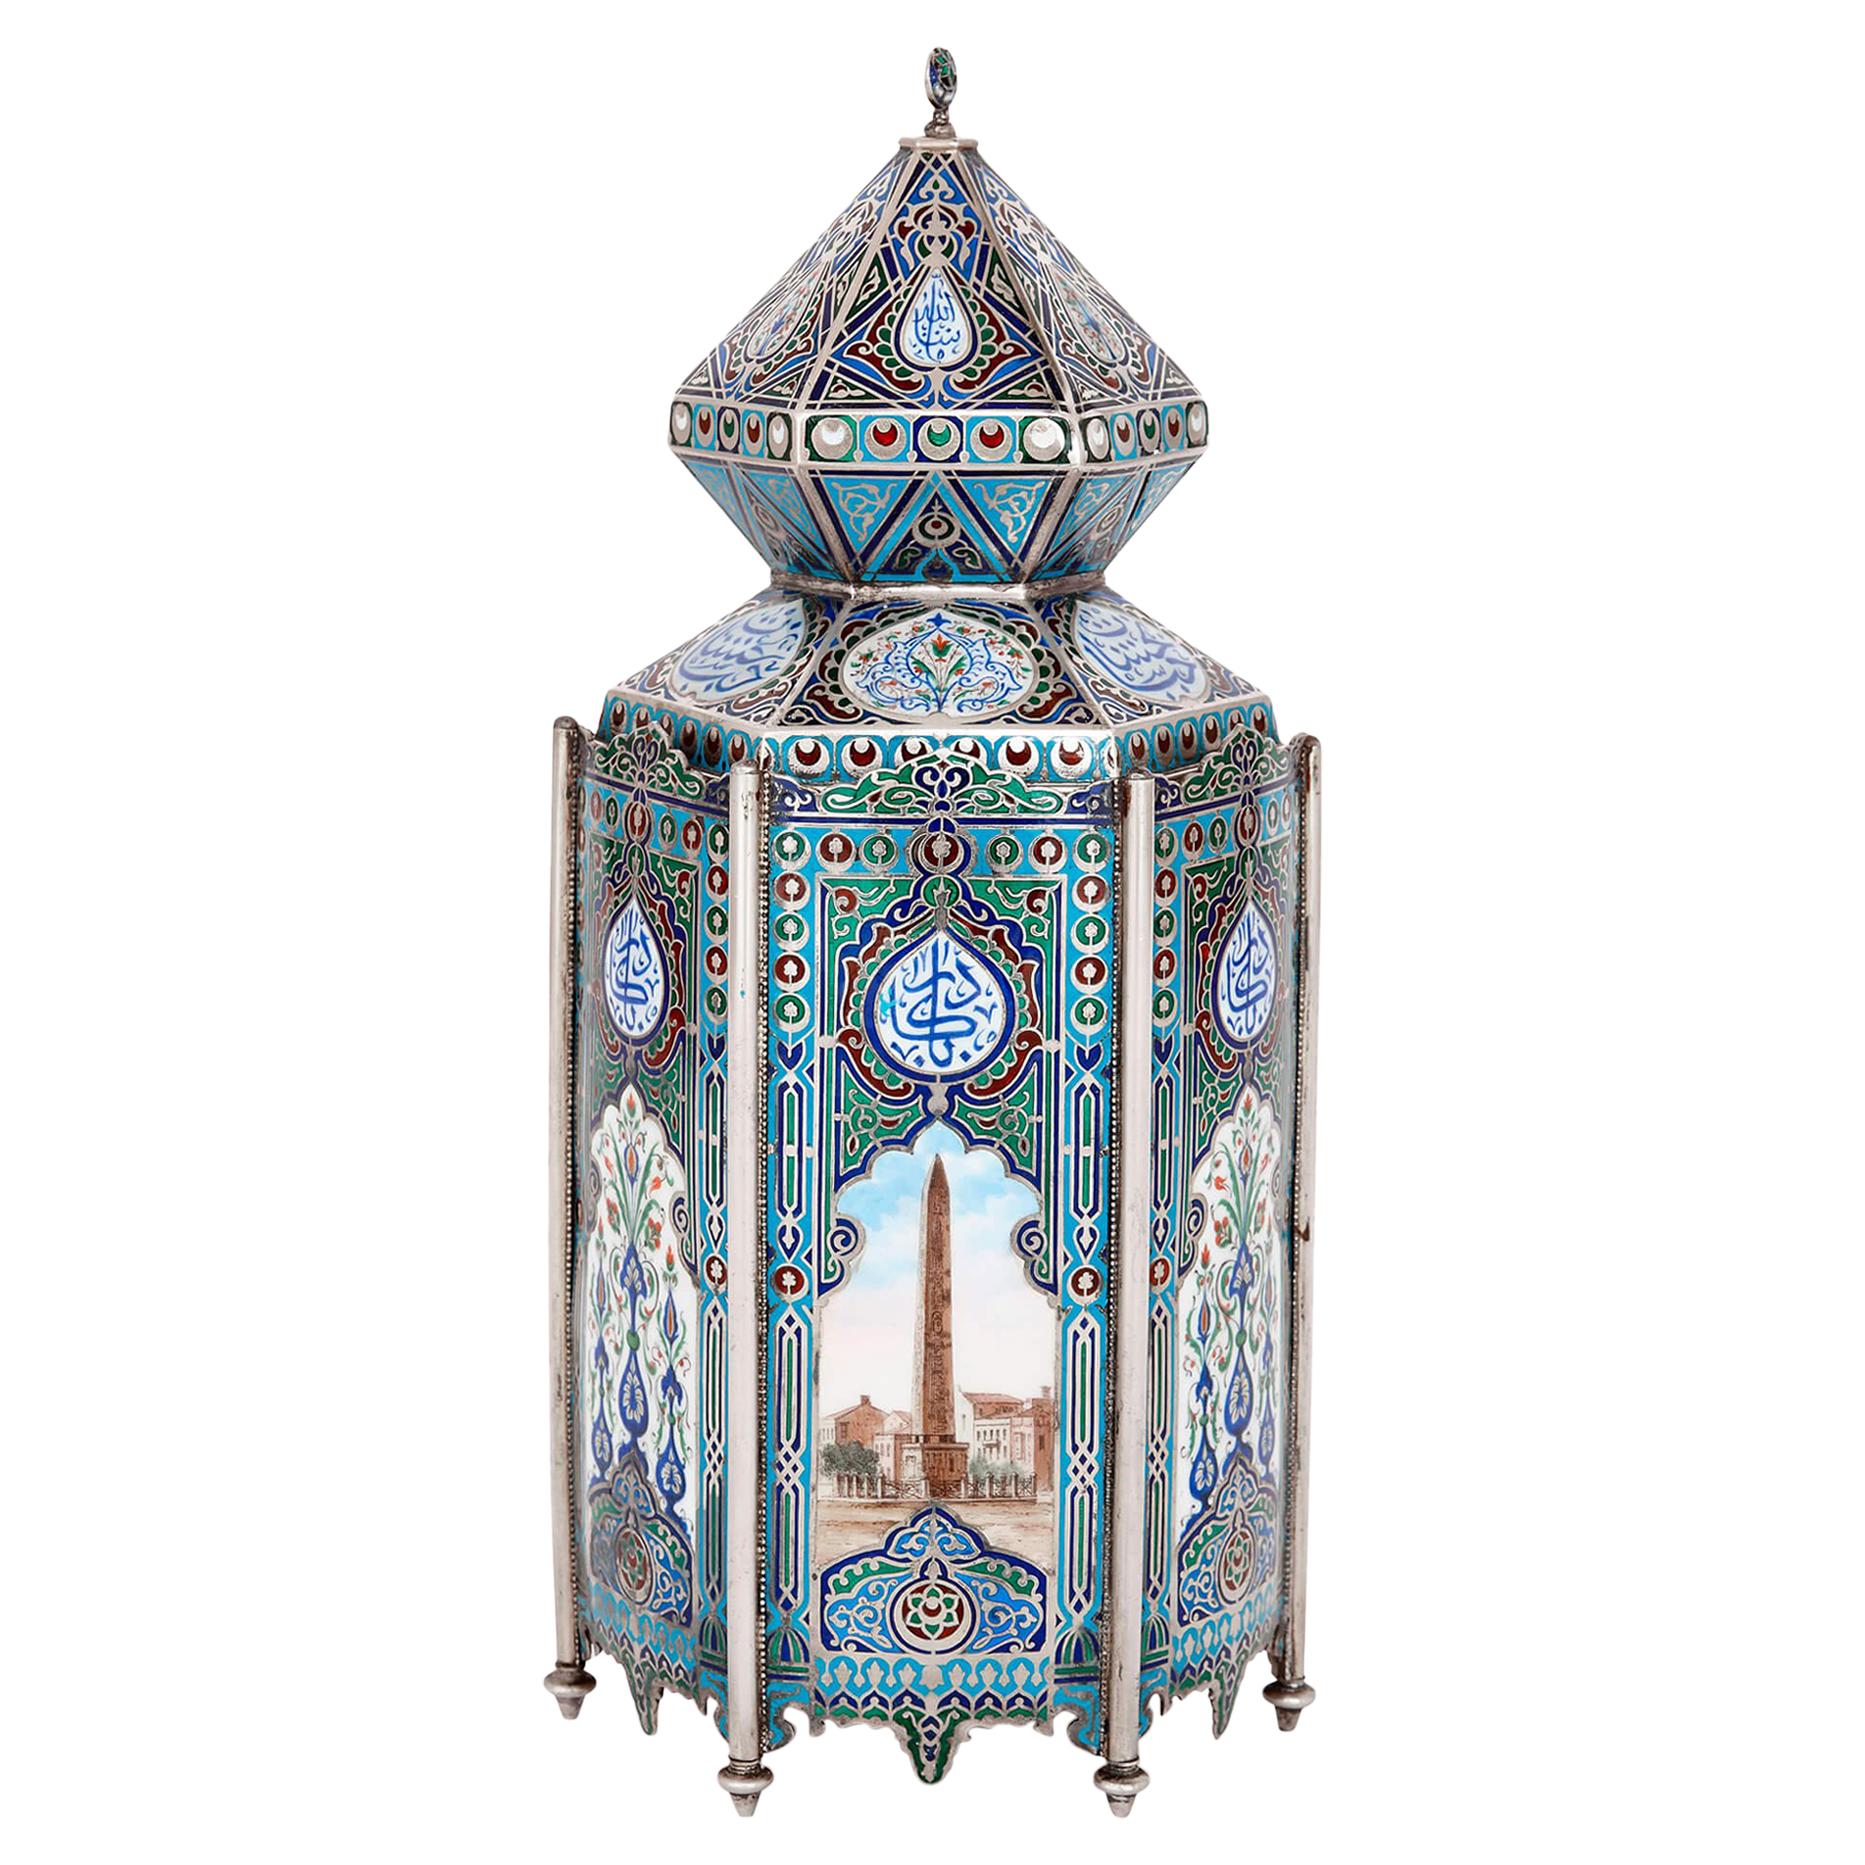 Ungewöhnliche islamische Vase aus russischem Silber und Emaille, hergestellt in Russland